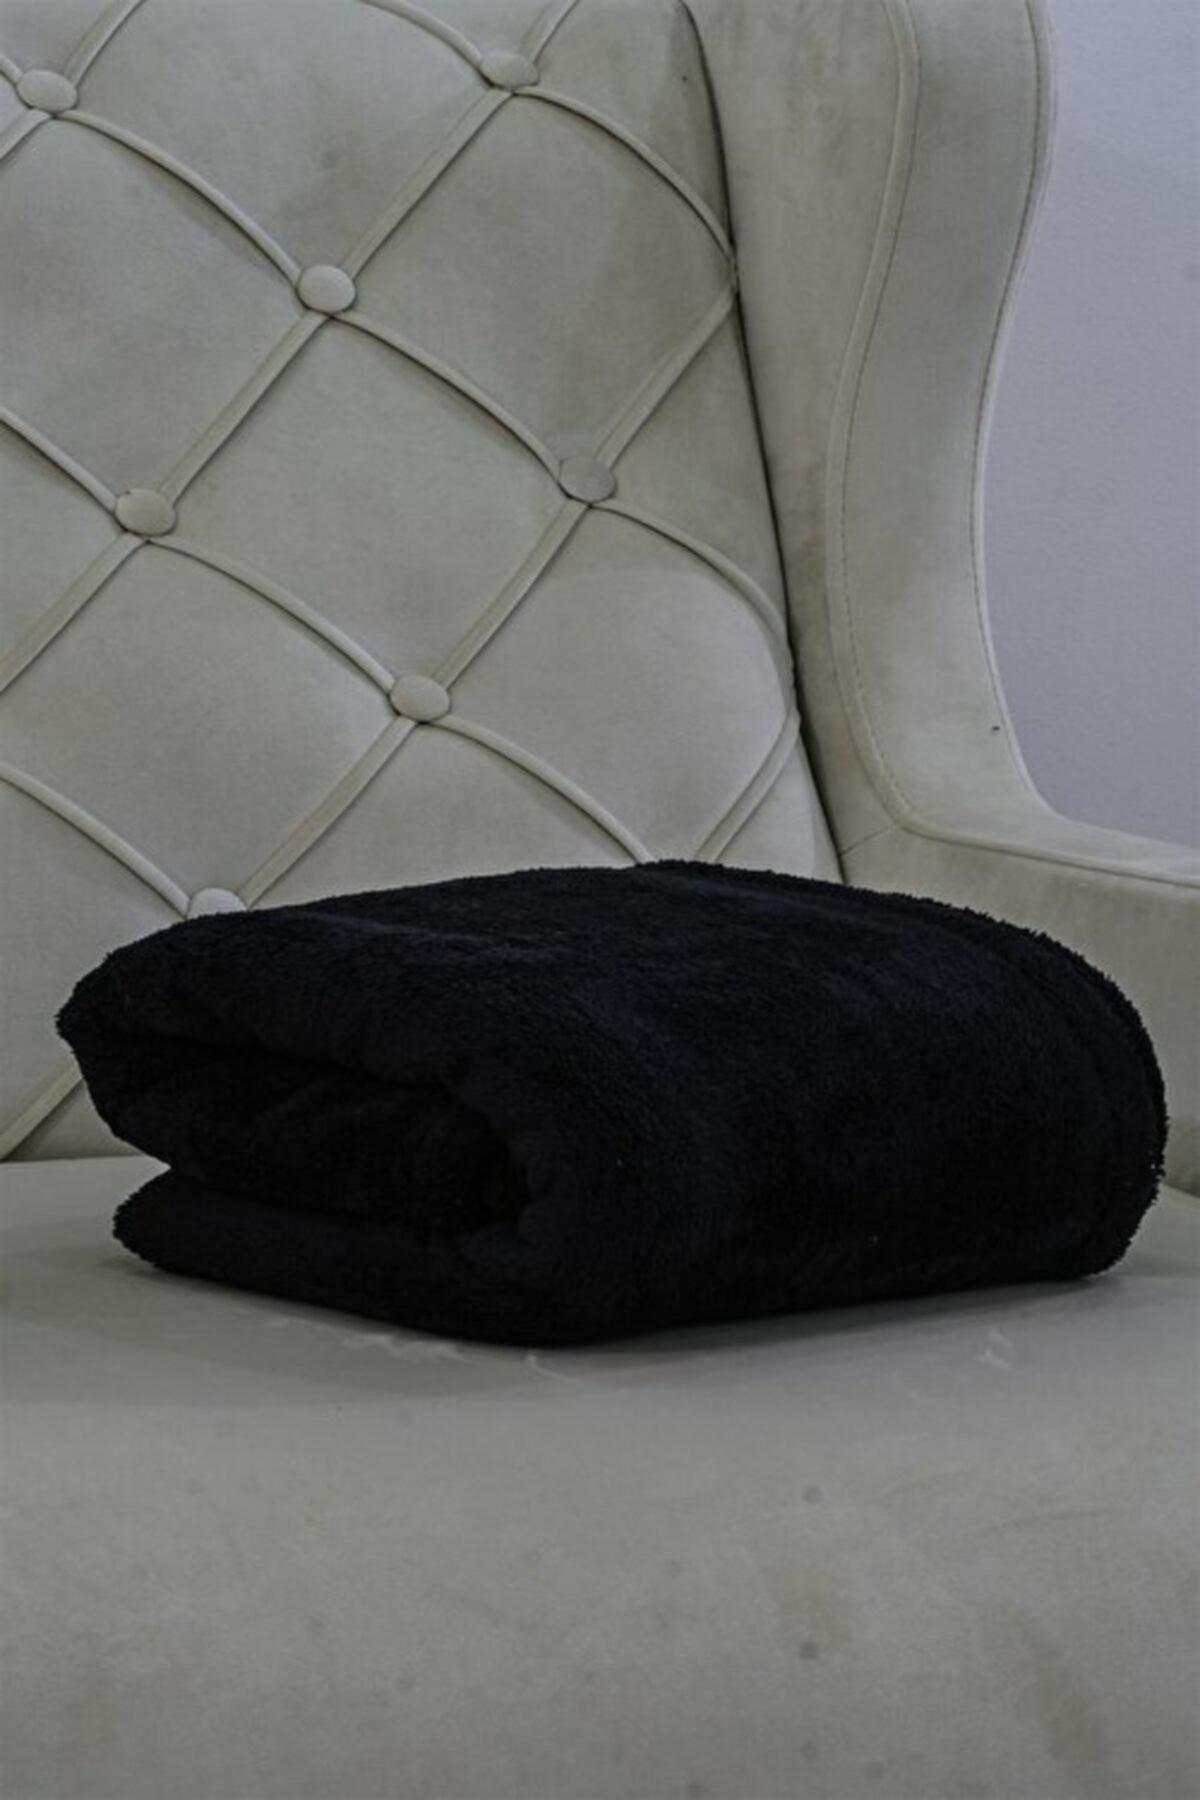 Wellsoft Blanket Television Blanket Plush Fleece Blanket Single 170*230 Black - Swordslife